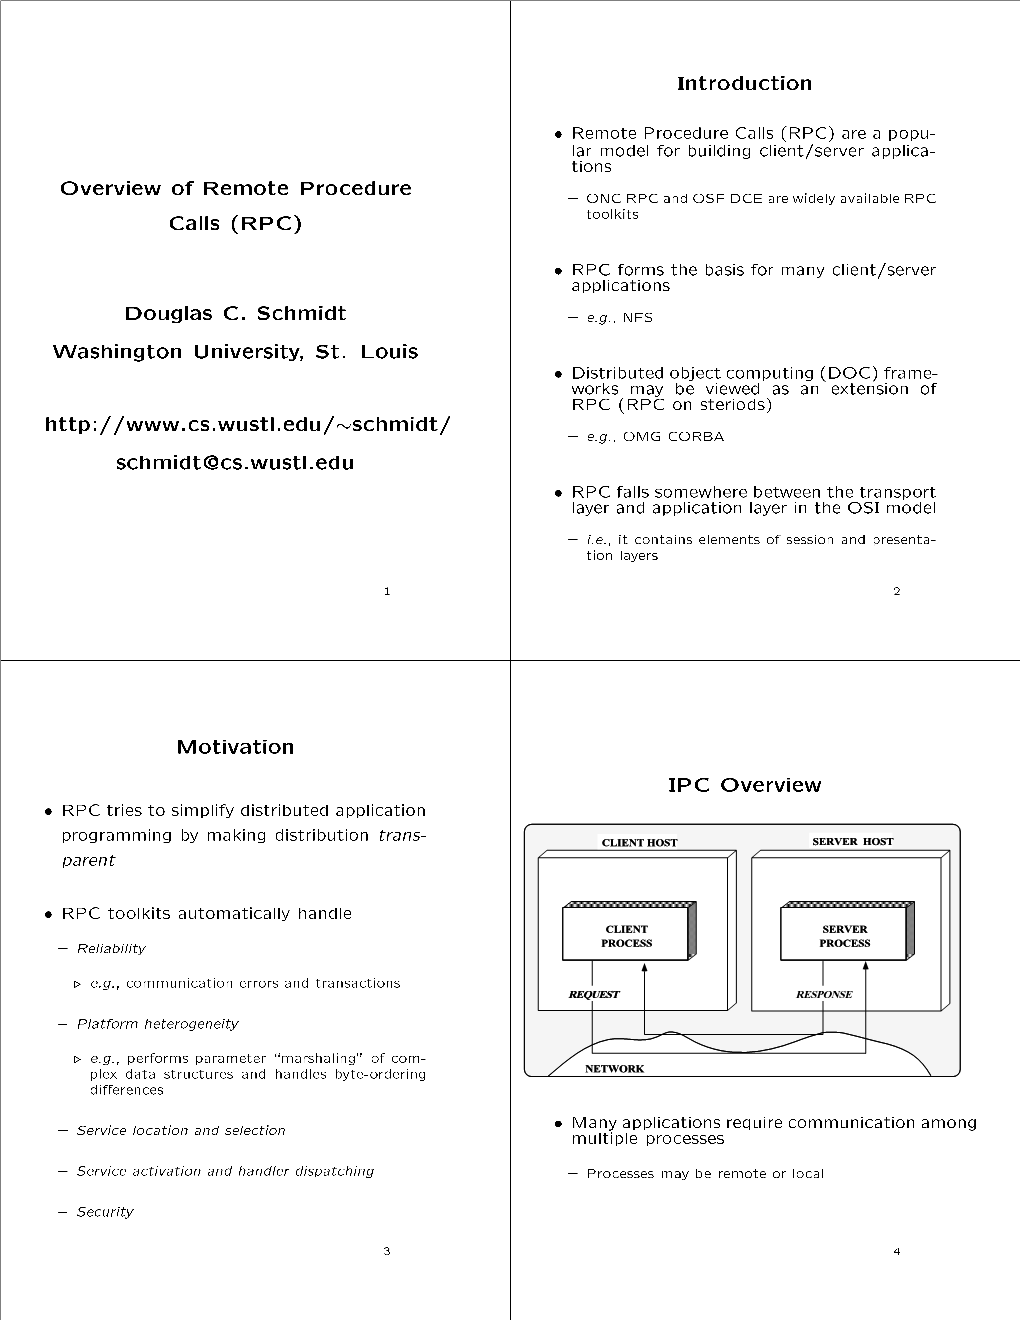 Overview of Remote Procedure Calls RPC Douglas C. Schmidt